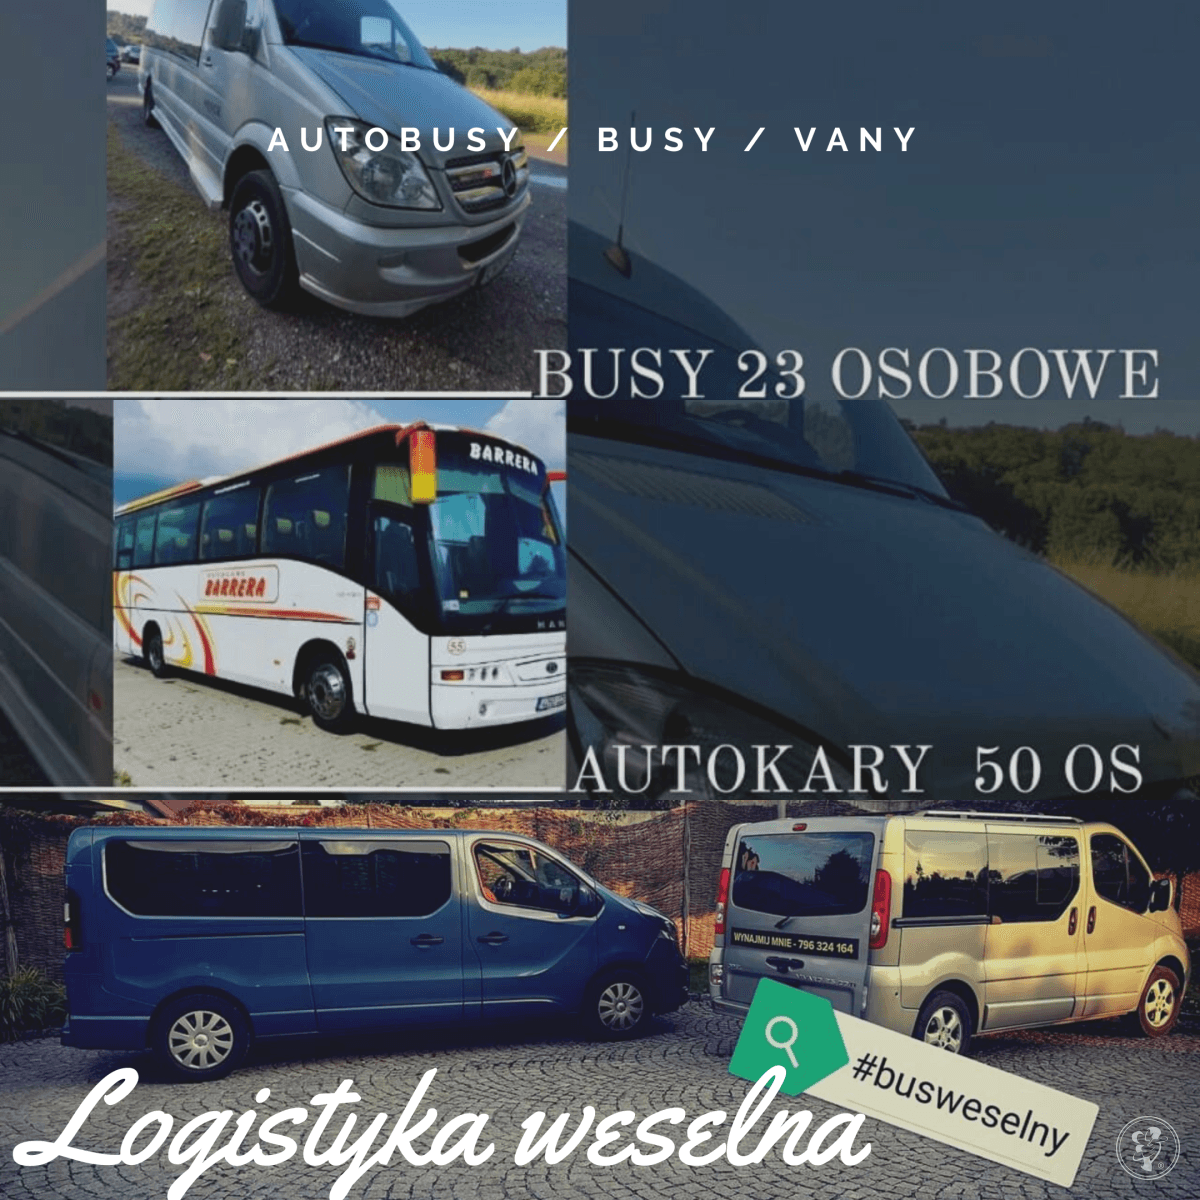 Busy i Autobusy - Sektor WOW | Wynajem busów Myślenice, małopolskie - zdjęcie 1